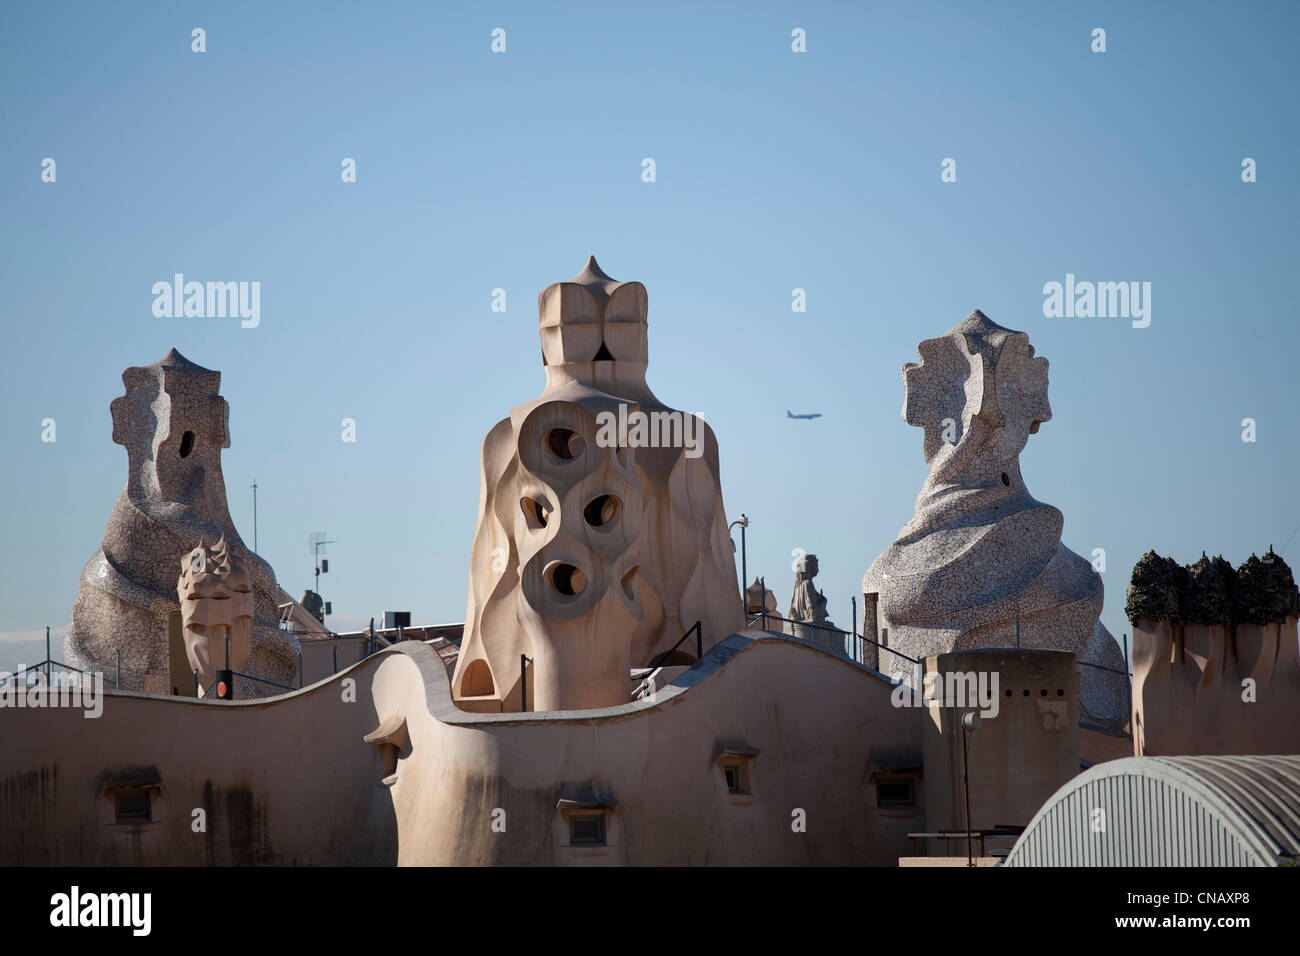 Bâtiment de Gaudi sur le toit Banque D'Images